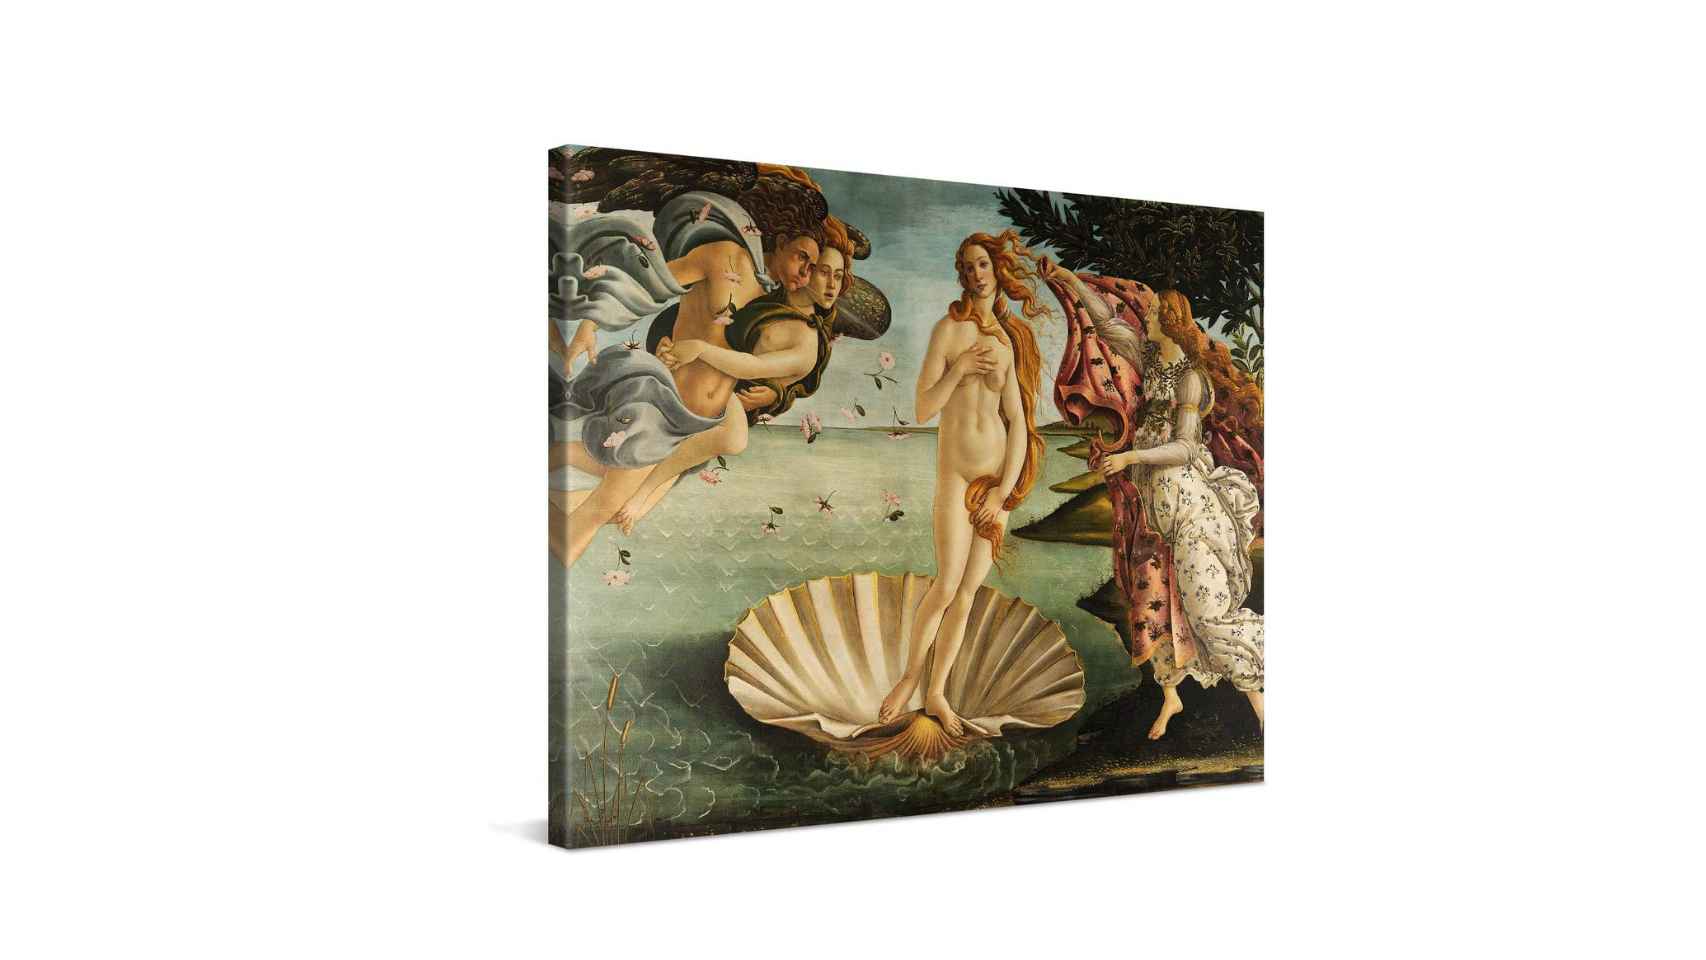 Cuadro El nacimiento de Venus de Botticelli